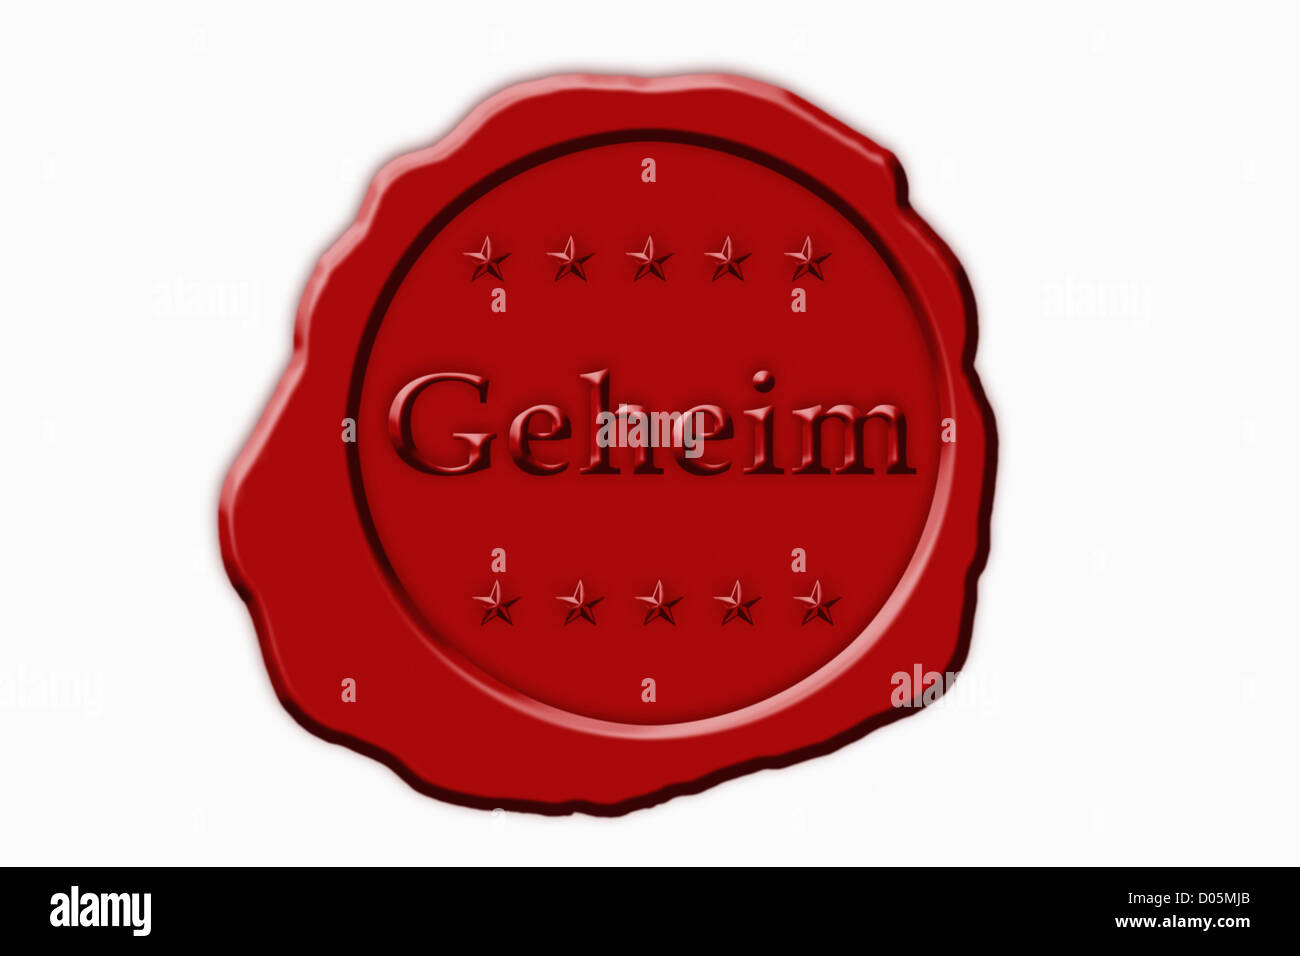 Detailansicht Eines Roten Siegel Mit der Aufschrift Geheim | Detail-Foto einer roten Dichtung mit dem deutschen Inschrift Geheimnis Stockfoto